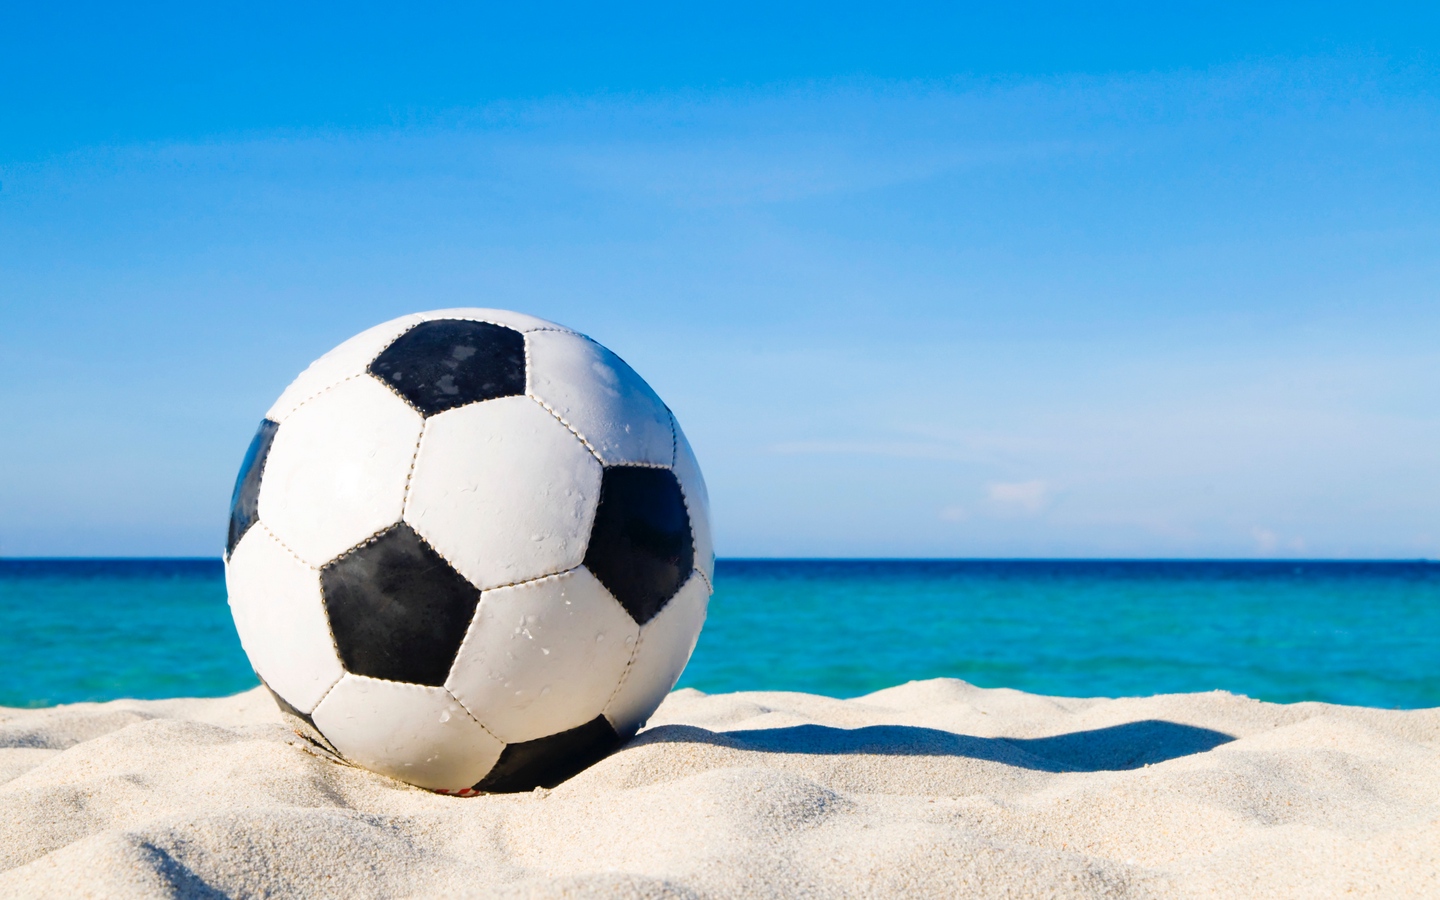 足球放在海边沙滩上上特写沙滩足球大屏高清1440x900桌面壁纸